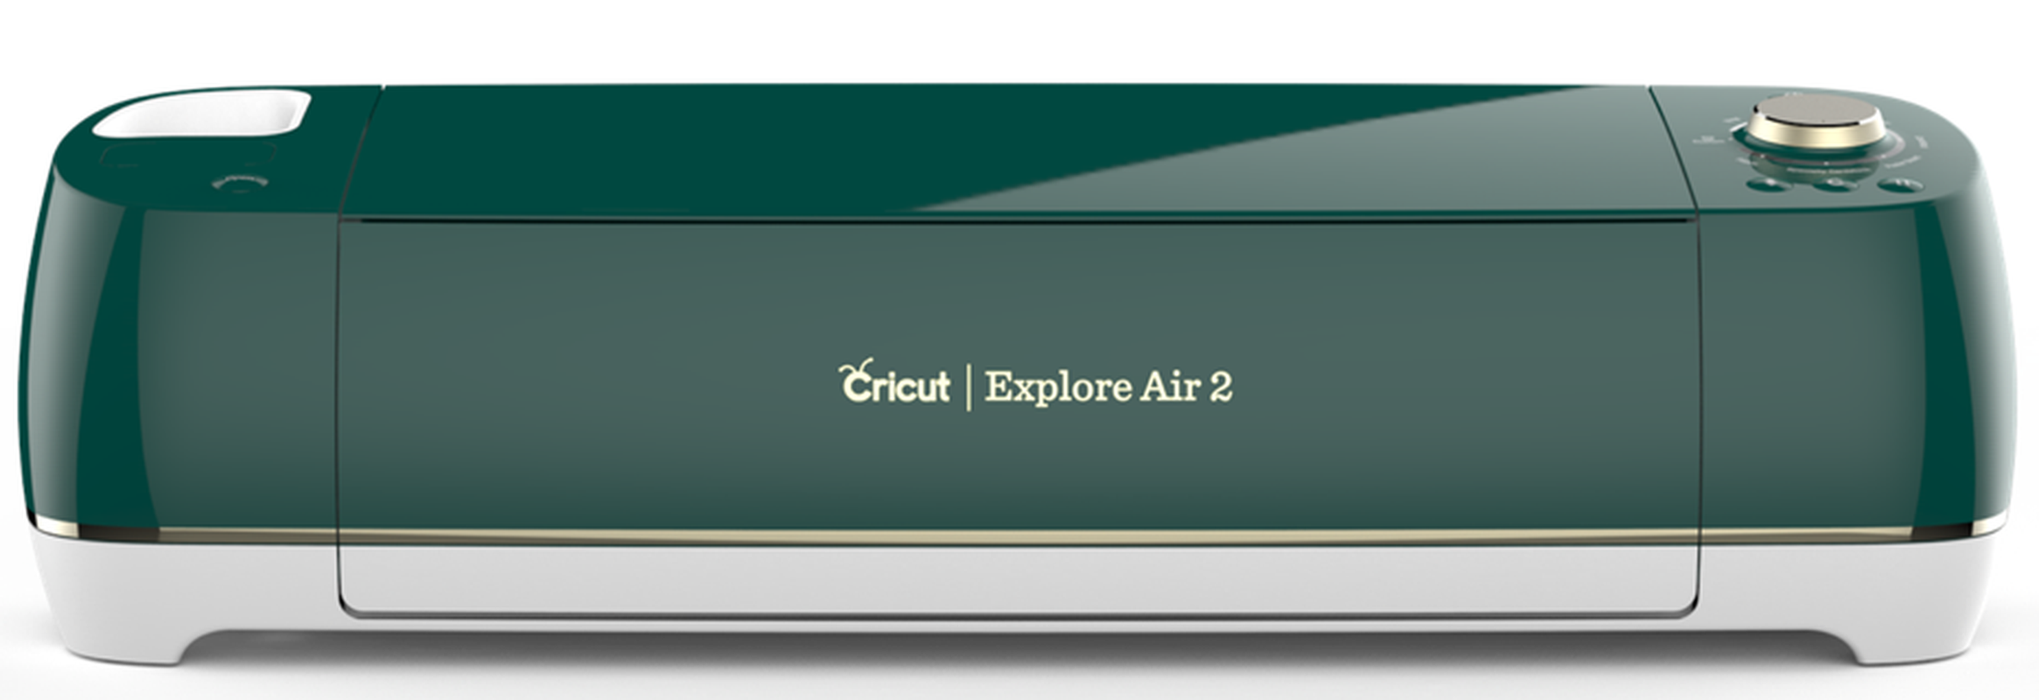 Cricut Explore Air 2 Emerald Machine